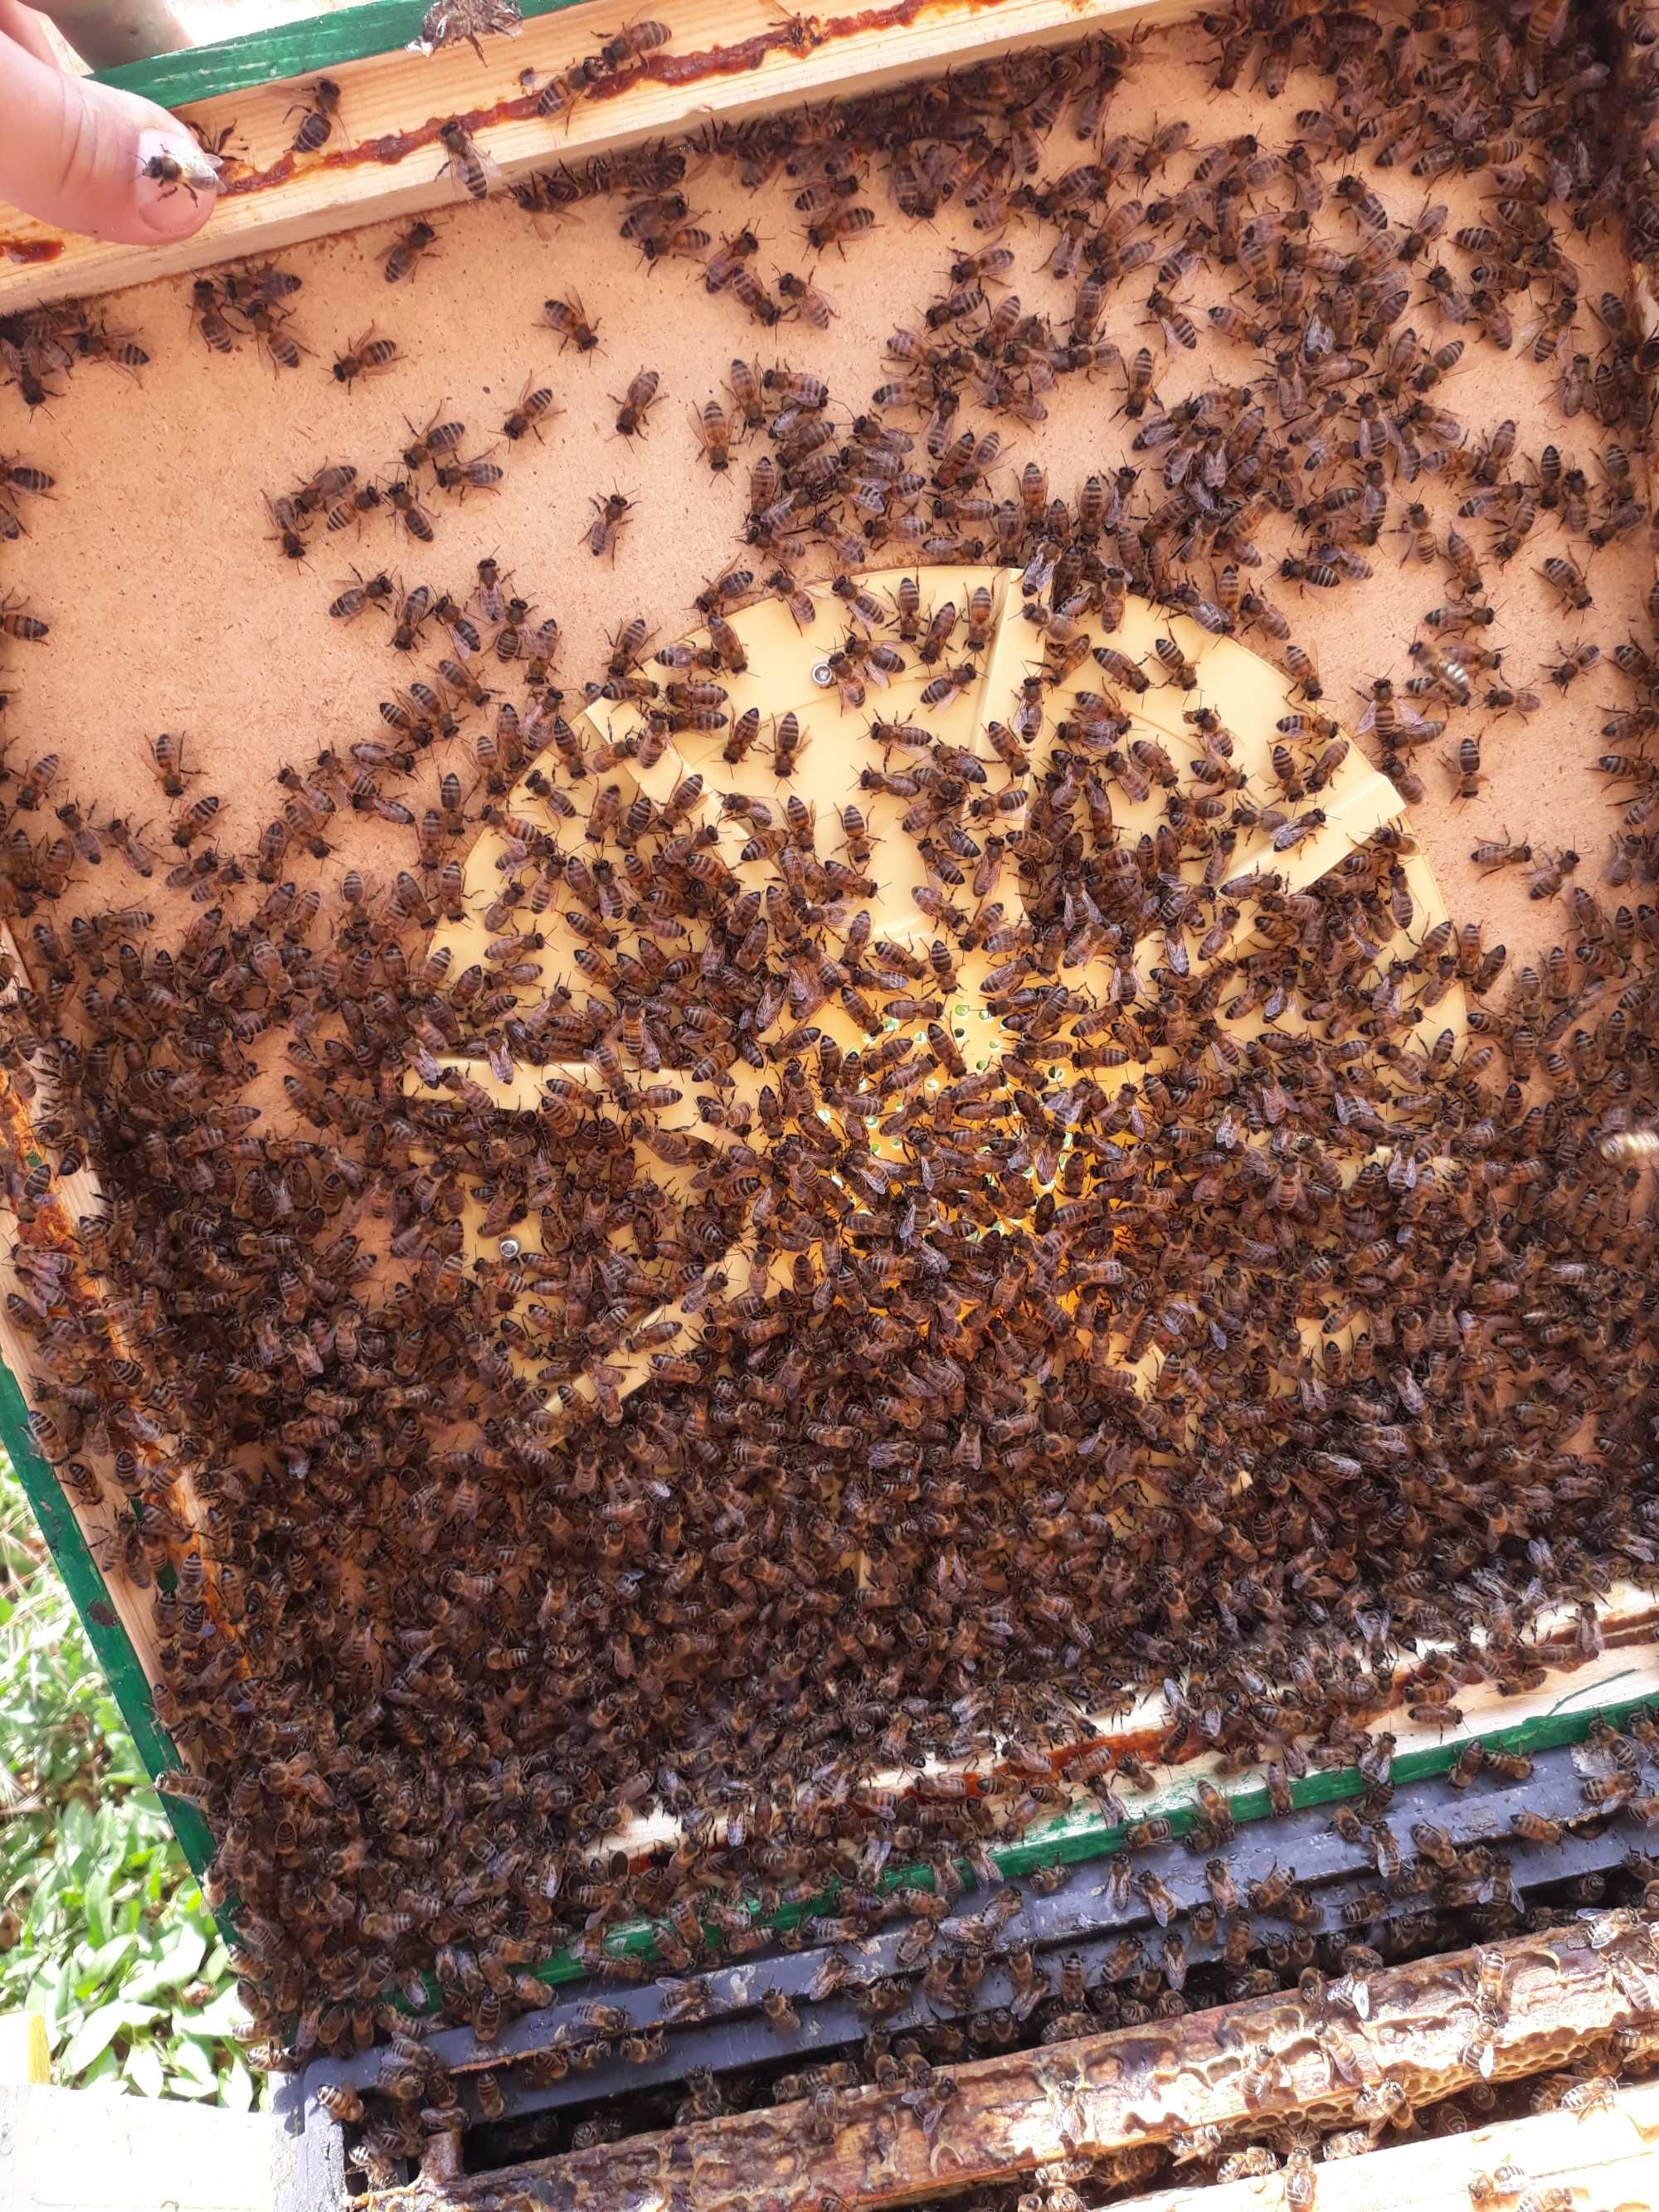 Rodziny pszczele 10-12 ramek krainka, r.wlkp, Ule, pasieka.